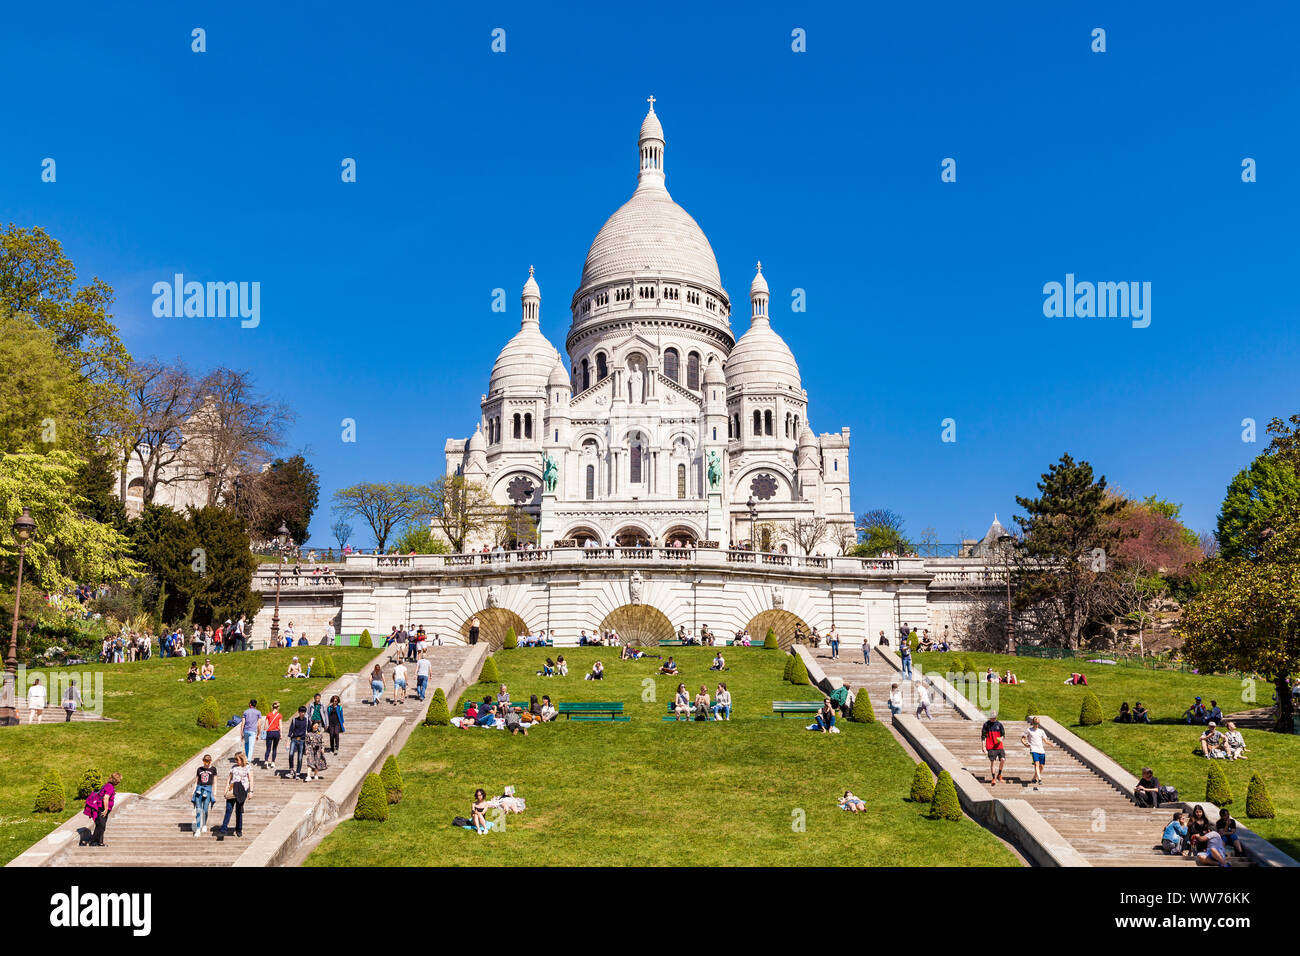 France, Paris, Montmartre, SacrÃ©-Coeur, Basilica, public park Stock Photo